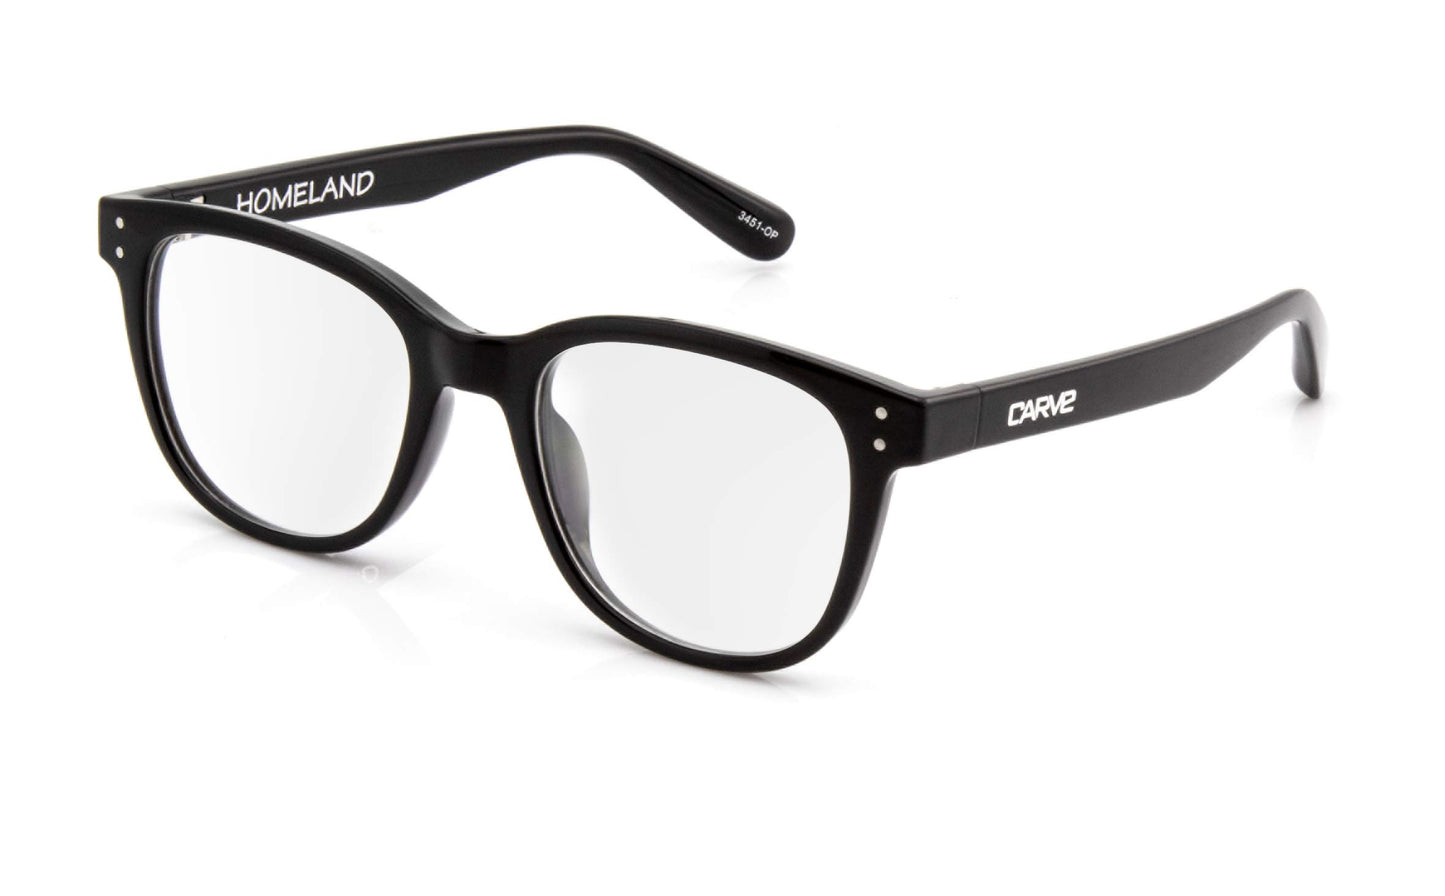 Homeland - Reading Gloss Black Frame Glasses